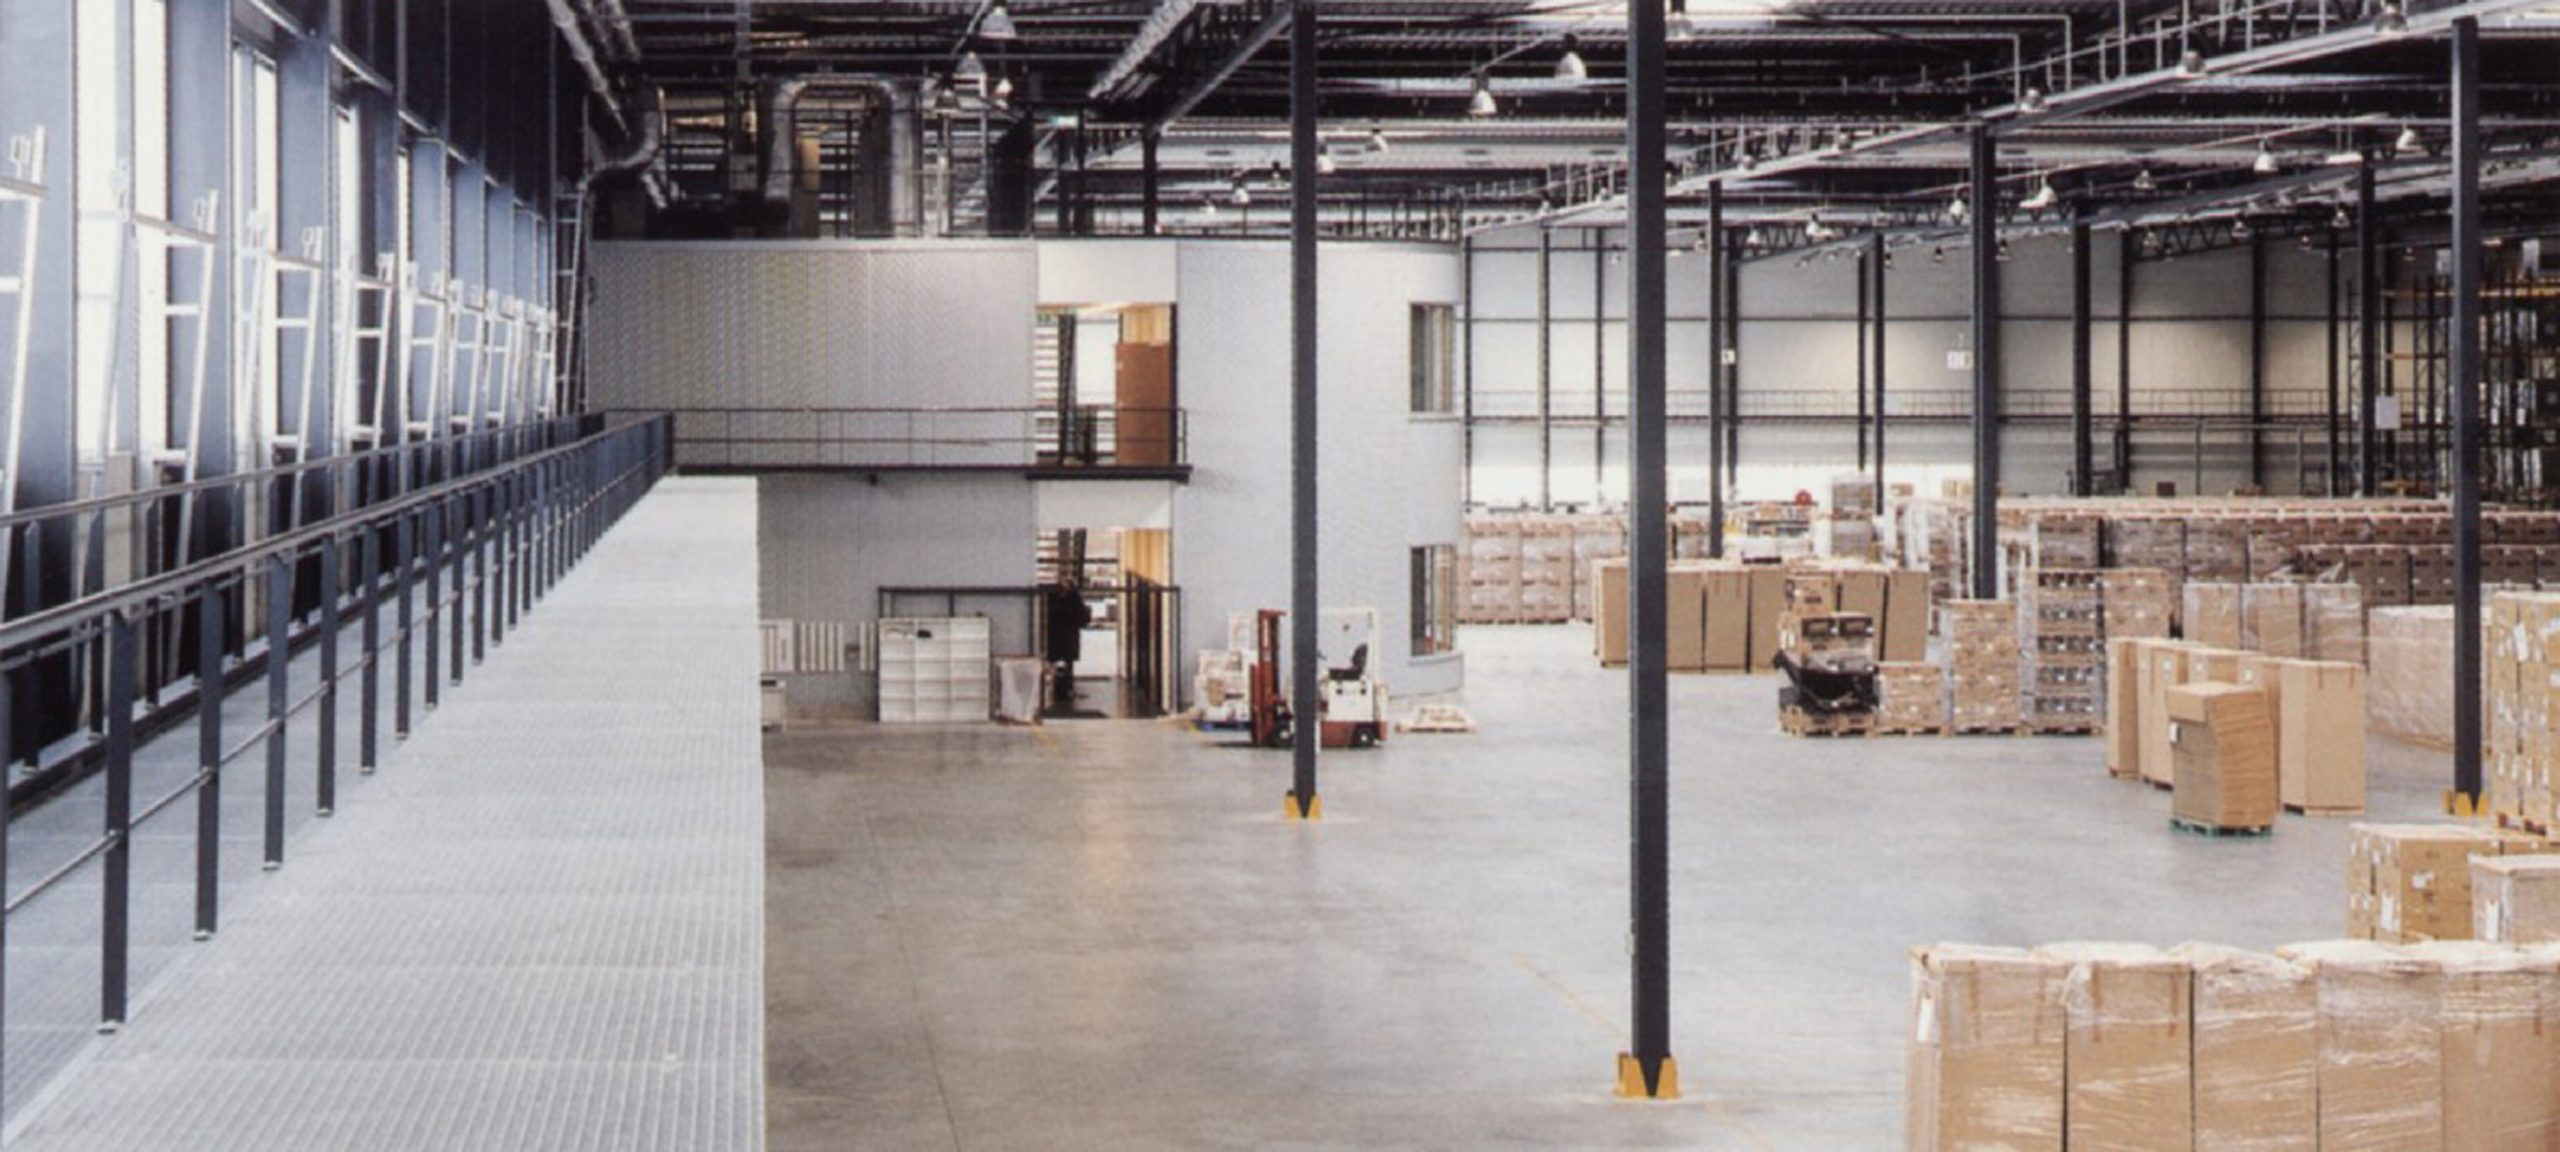 sony warehouse jobs